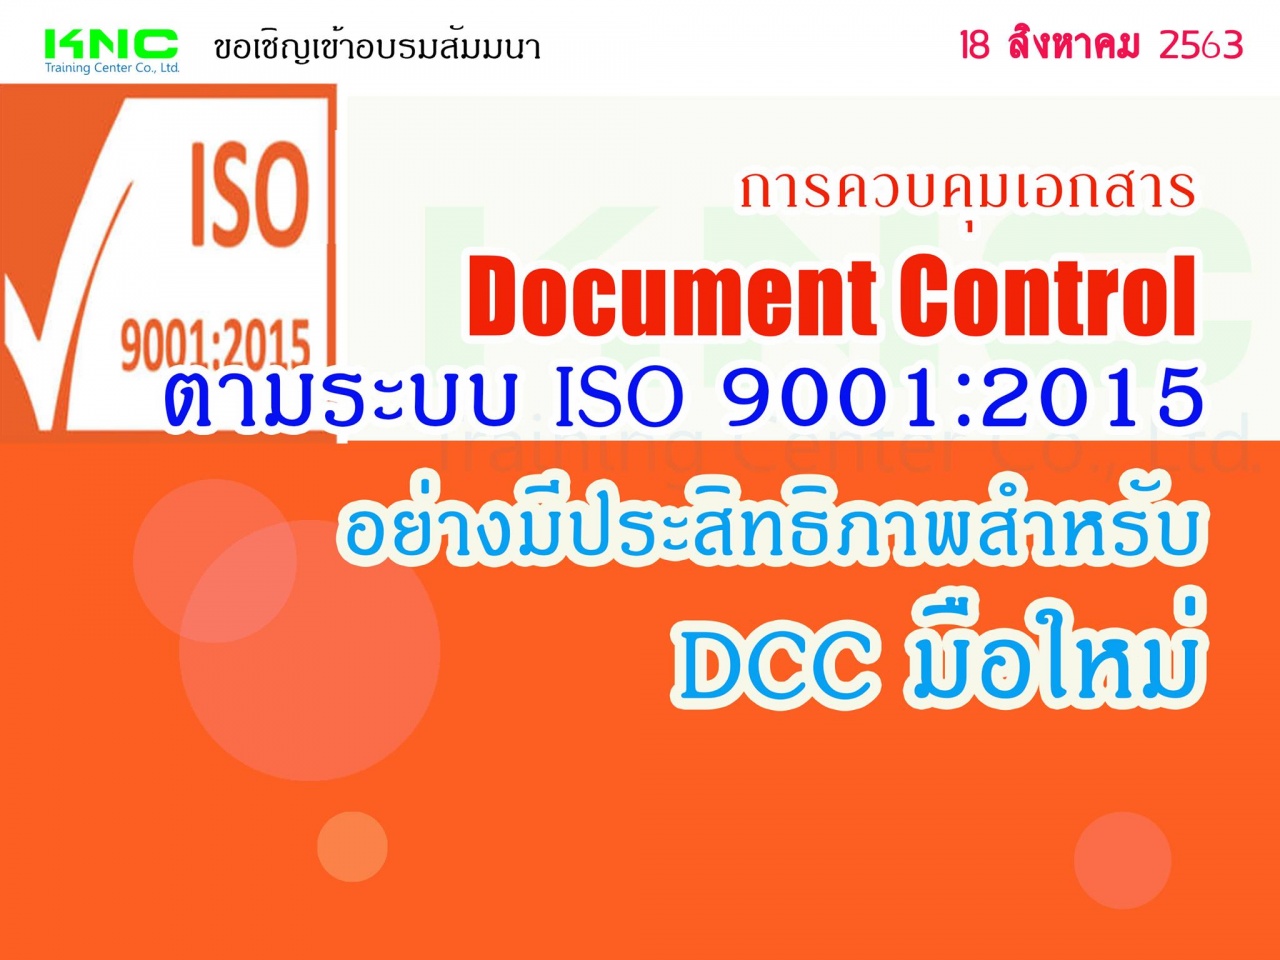 การควบคุมเอกสาร Document Control ตามระบบ ISO 9001:2015  อย่างมีประสิทธิภาพสำหรับ DCC มือใหม่